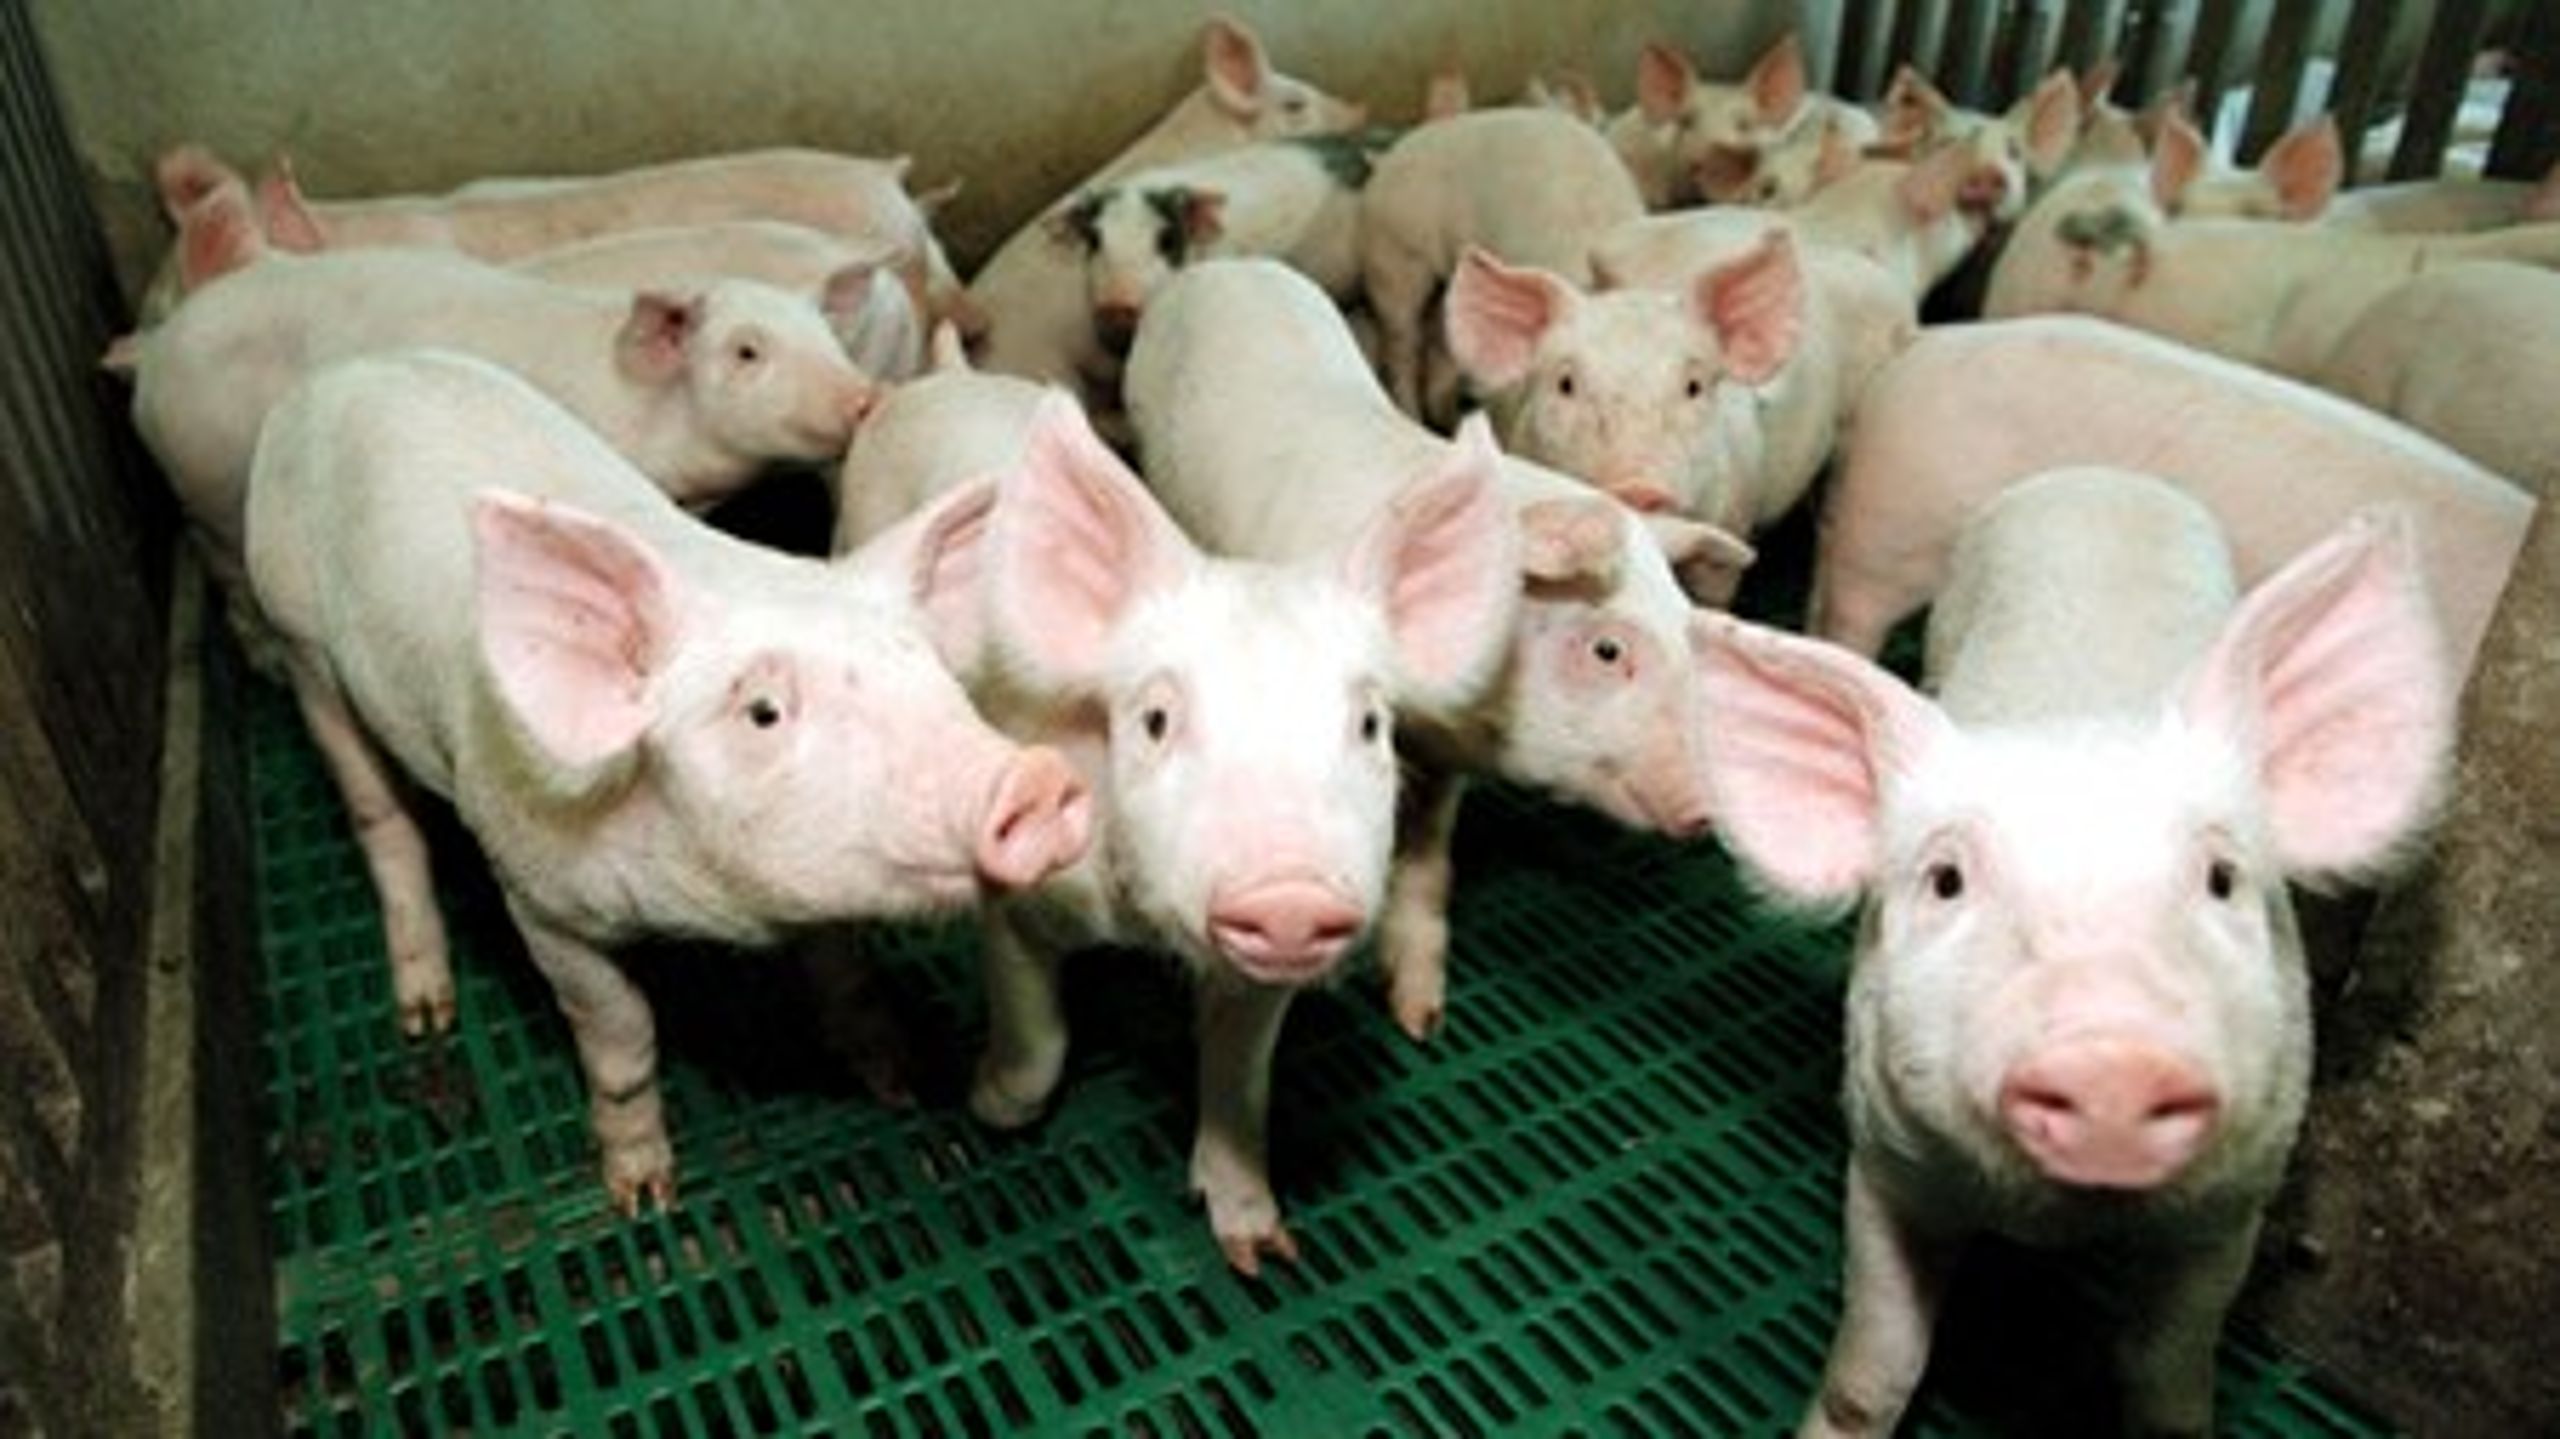 Zink bruges i svinefoder og som medicin til smågrise. Det kommer ud i landbrugsjorden via svinegyllen.